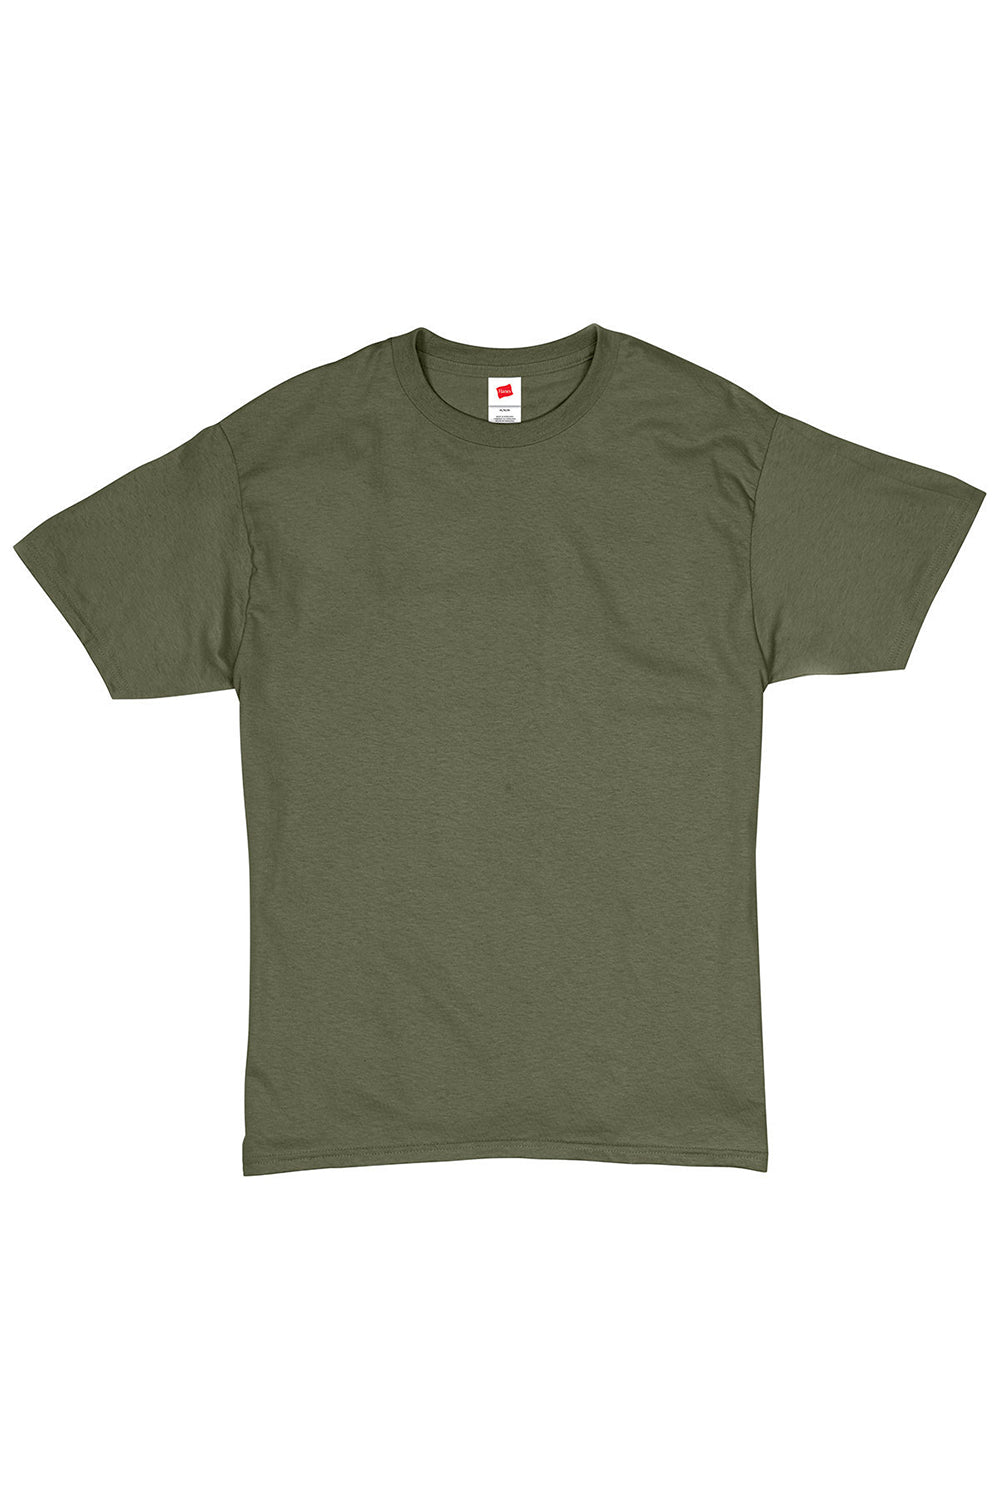 Hanes 5280 Mens ComfortSoft Short Sleeve Crewneck T-Shirt Fatigue Green Flat Front